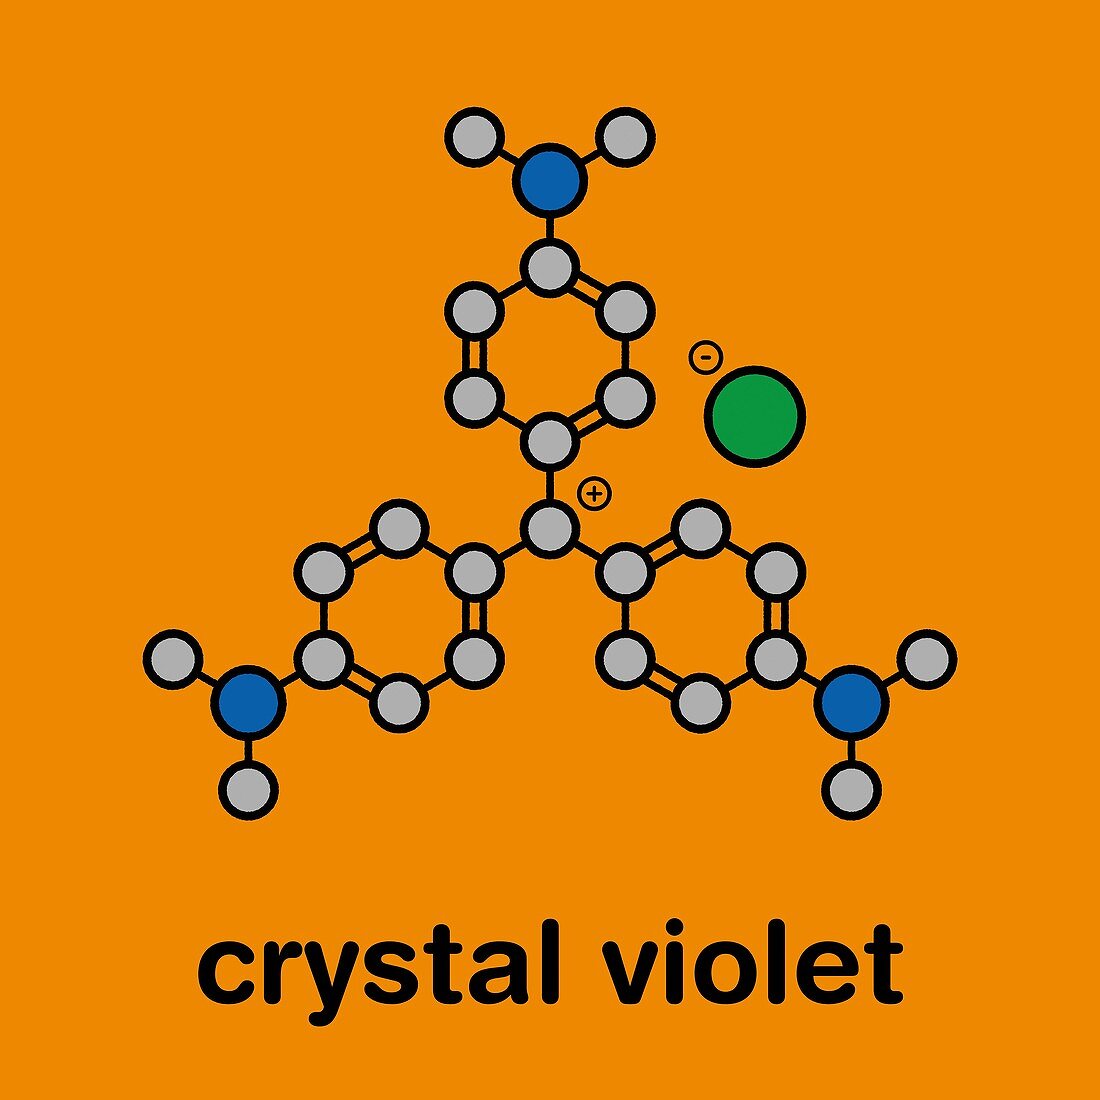 Crystal violet molecule, illustration